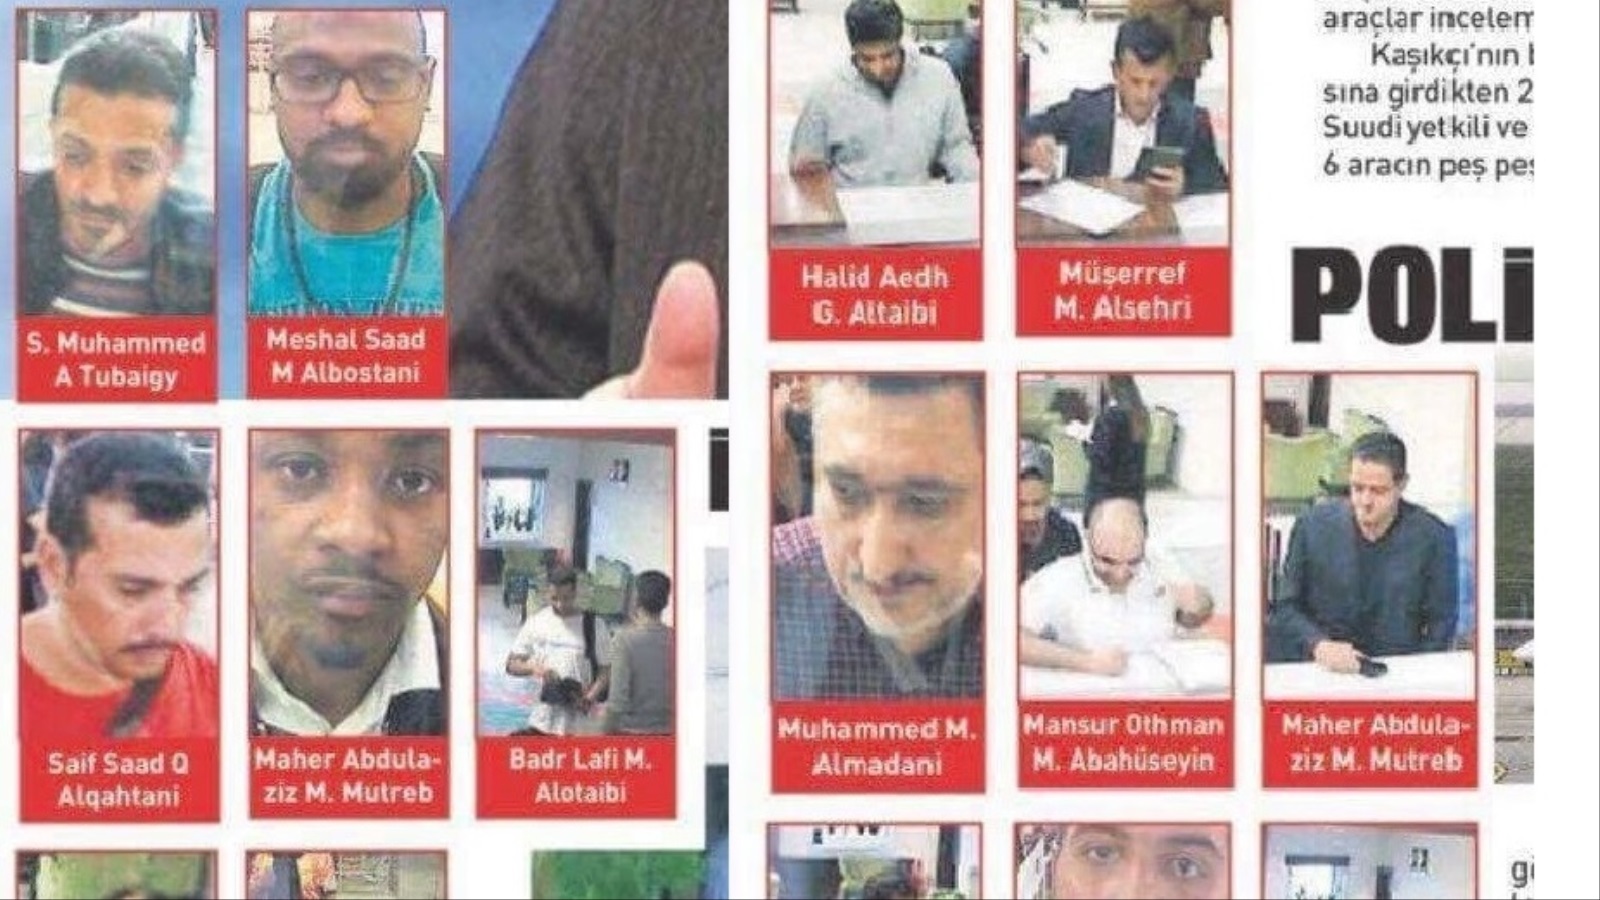 وسائل إعلام تركية تنشر صور 15 سعوديا تقول إنهم "متورطون في تعذيب وقتل خاشقجي" (مواقع التواصل الاجتماعي)